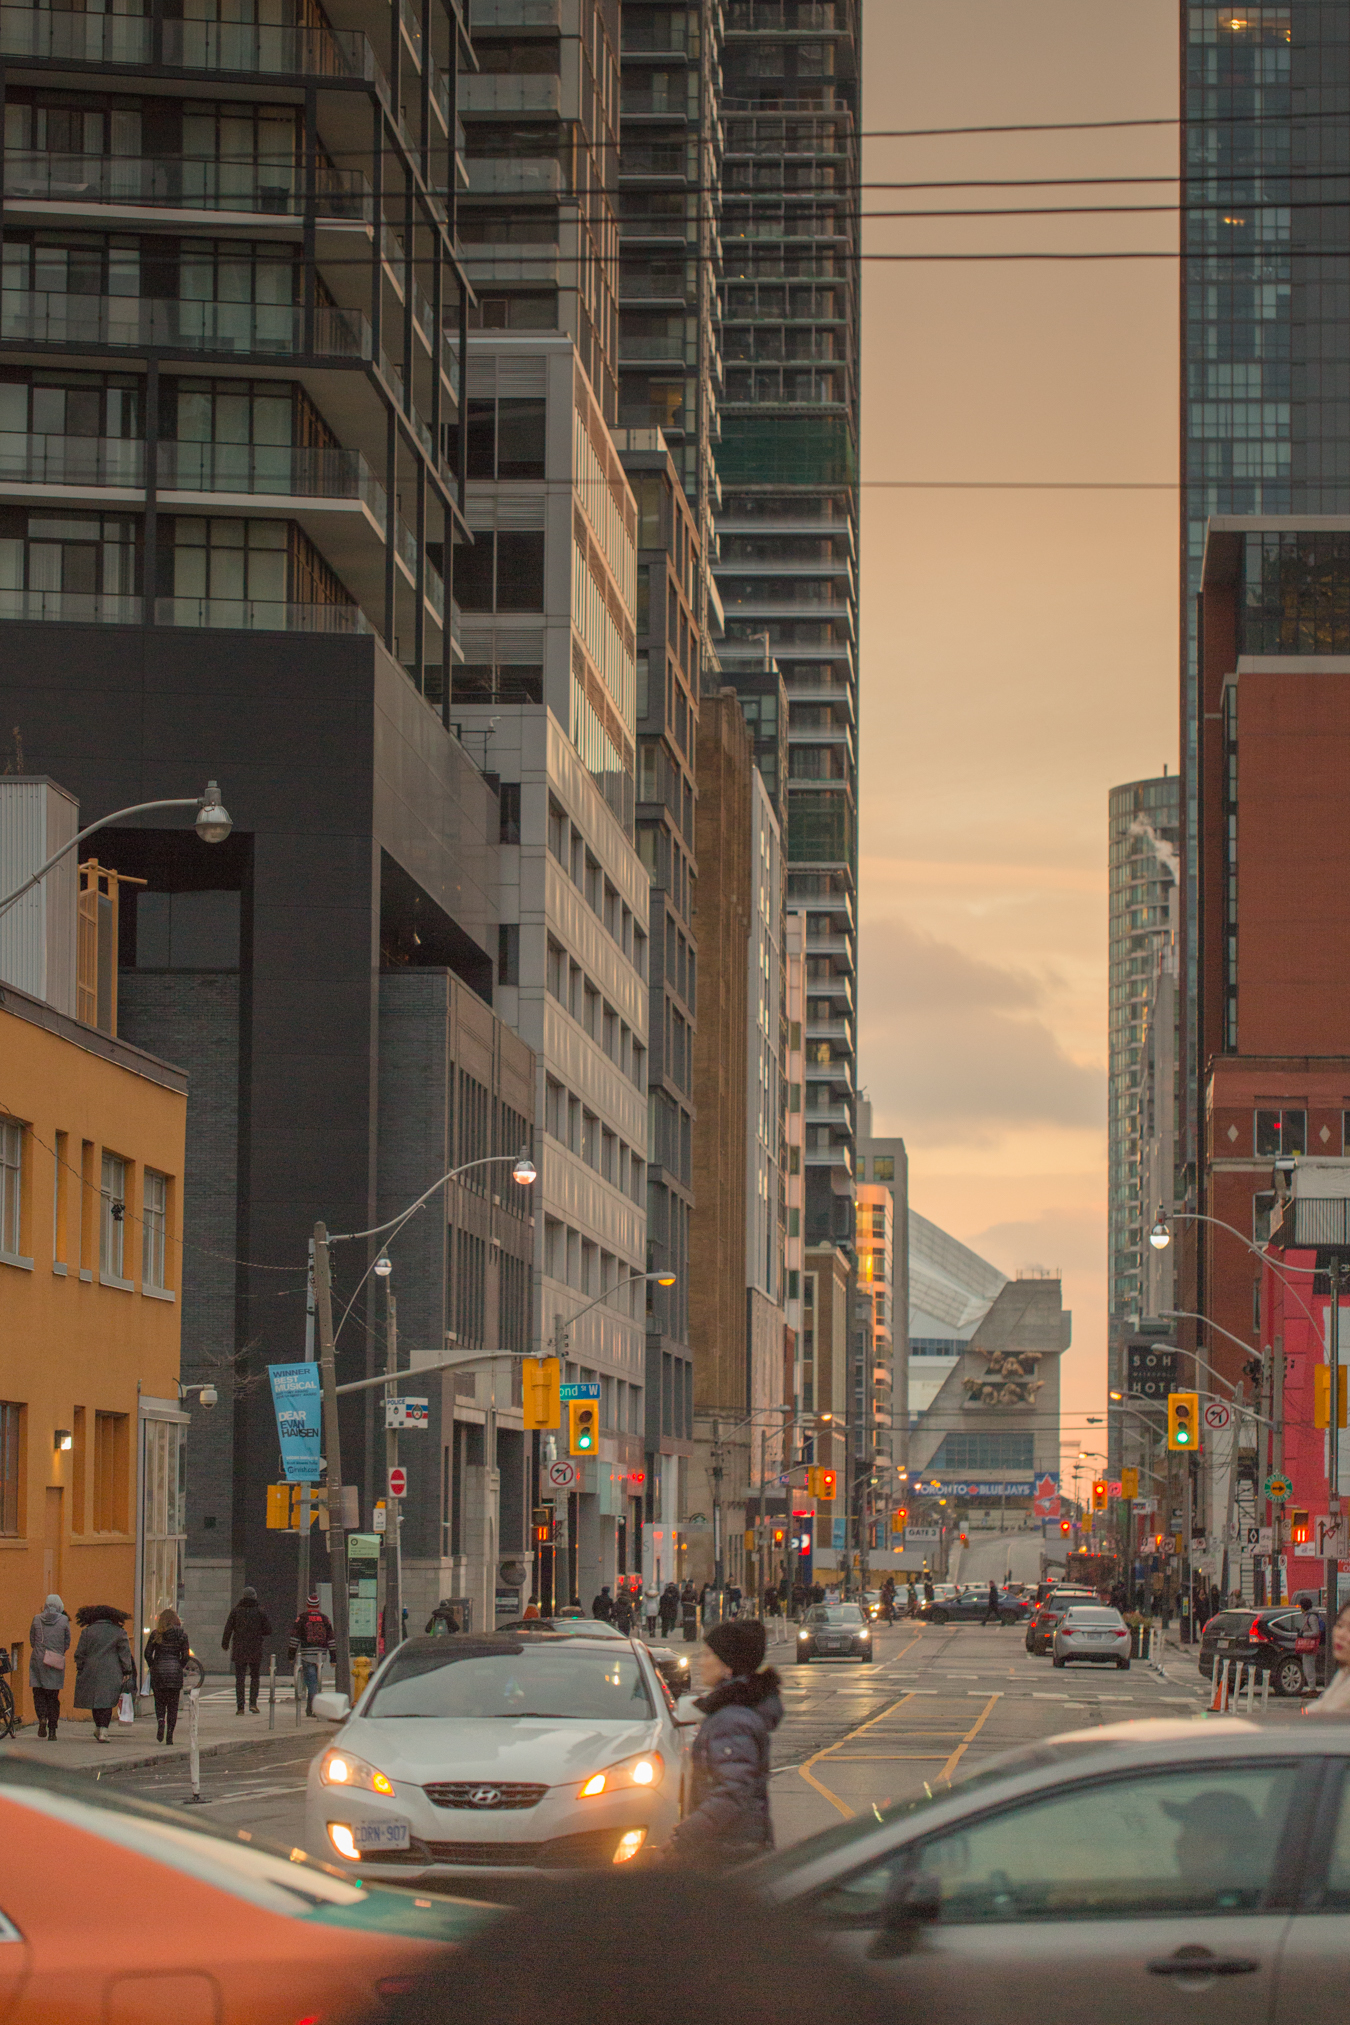 Sun set - Peter Street - Toronto, Ontario